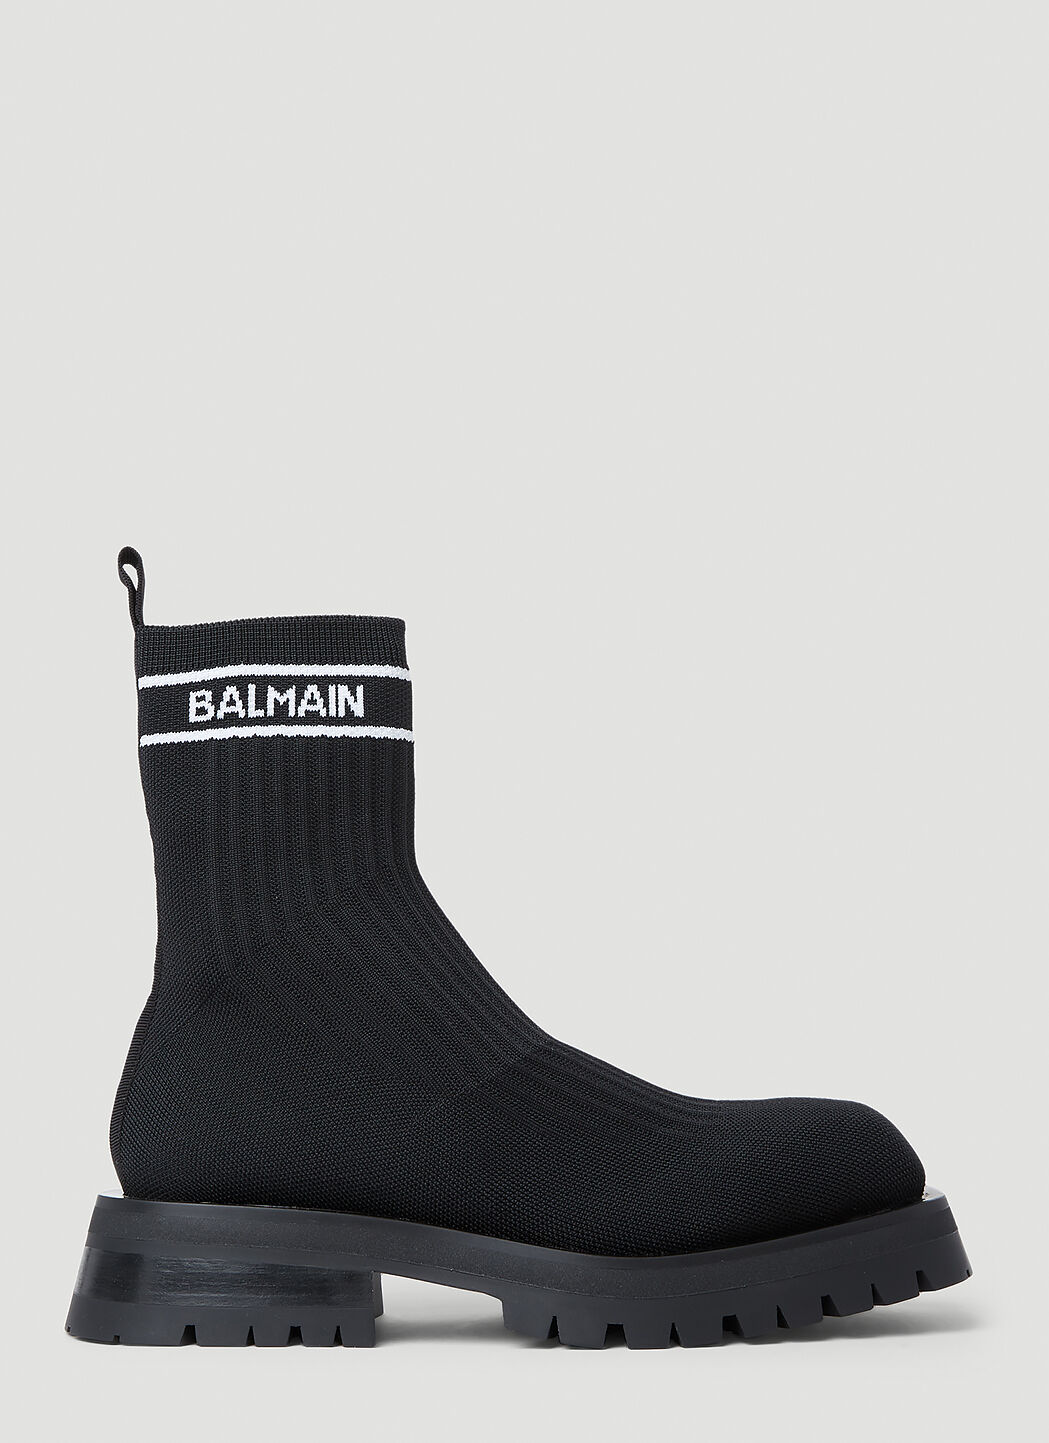 Balmain Knit Boots Grey bln0253009